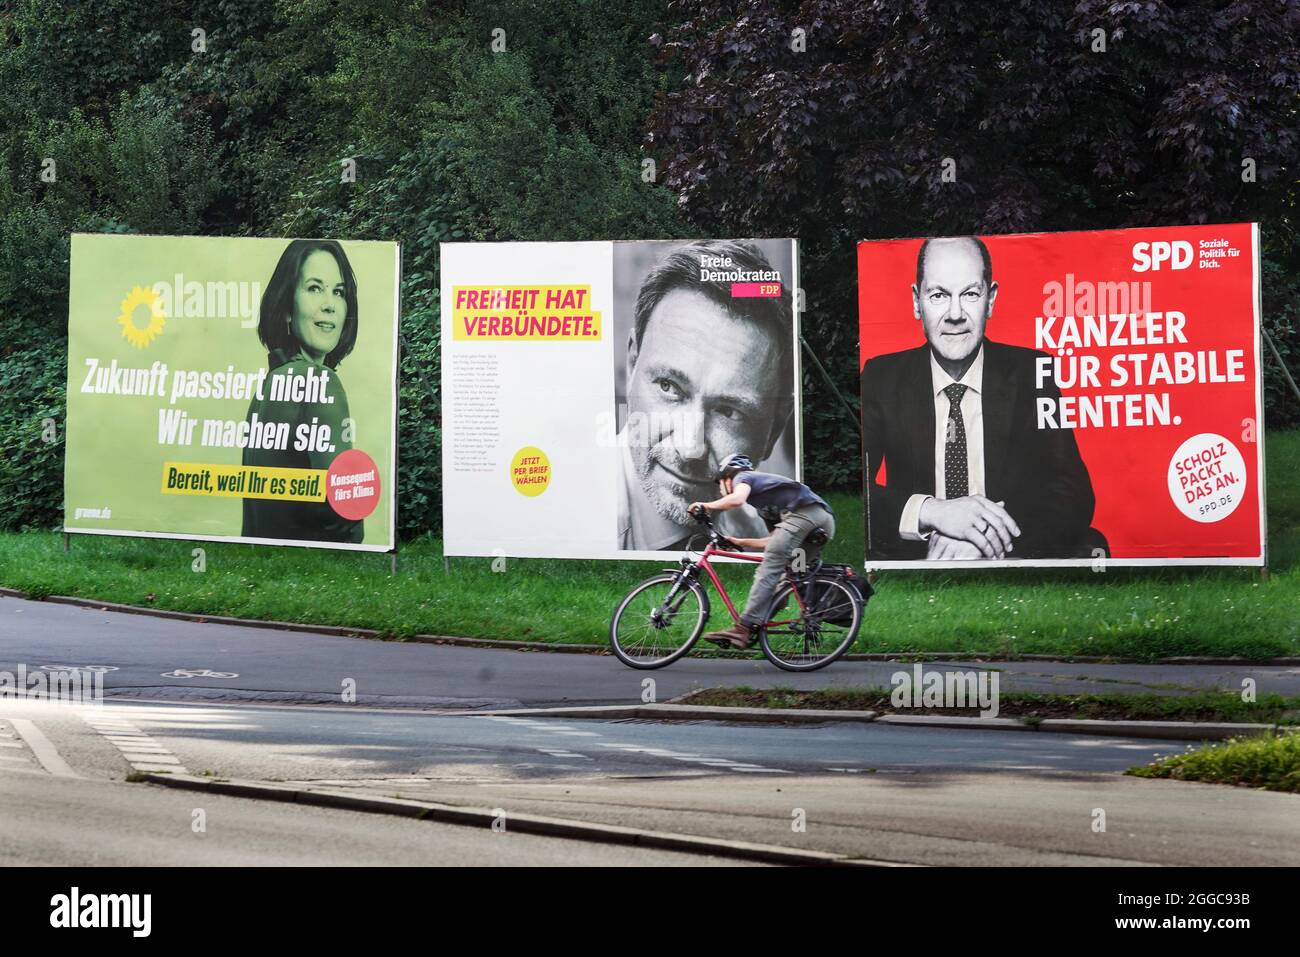 Bundestagswahl 2021, Wahlplakate der Parteien zur Bundestagswahl am 26.9.2021: DIE GRÜNEN (Annalena Baerbock) , FDP (Christian Lindner) und SPD (Olaf Scholz). Dortmund, 30.08.2021 Stock Photo